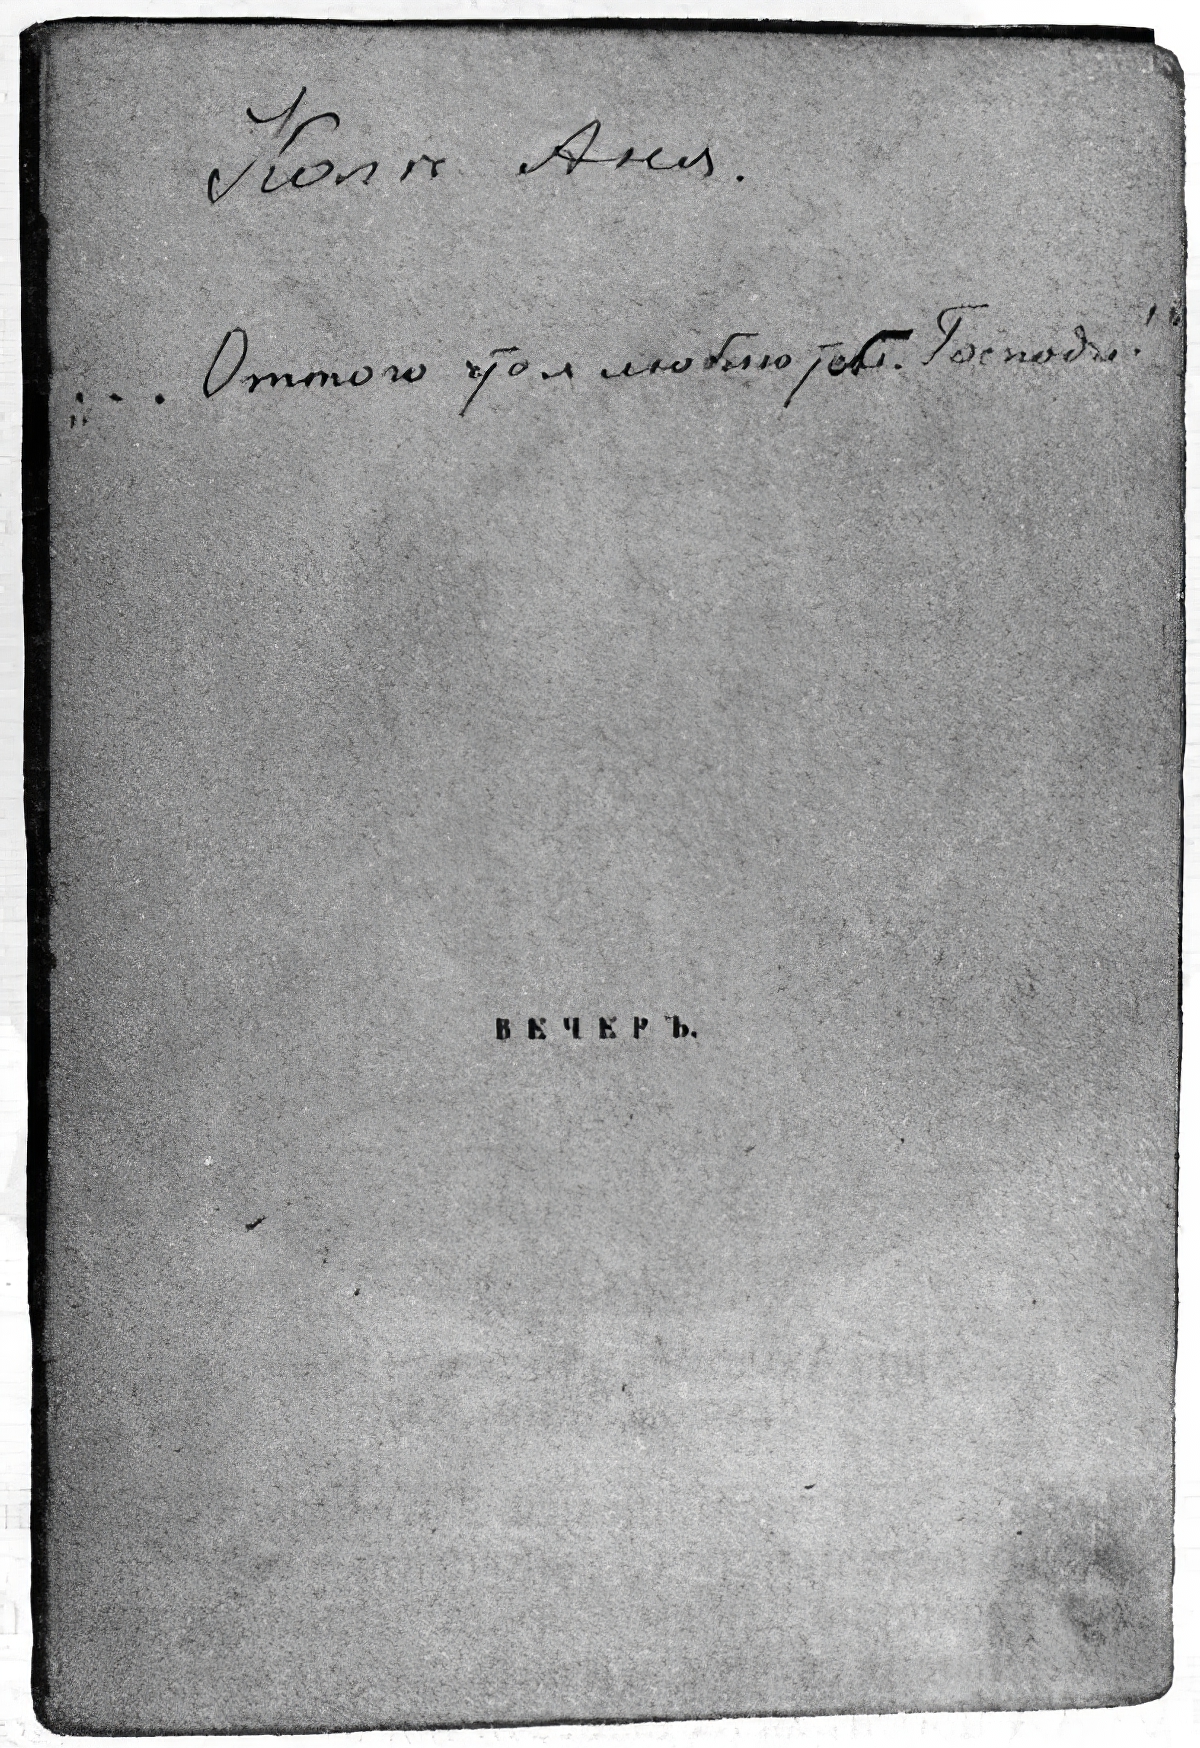 Титульный лист первой книги Ахматовой «Вечер»